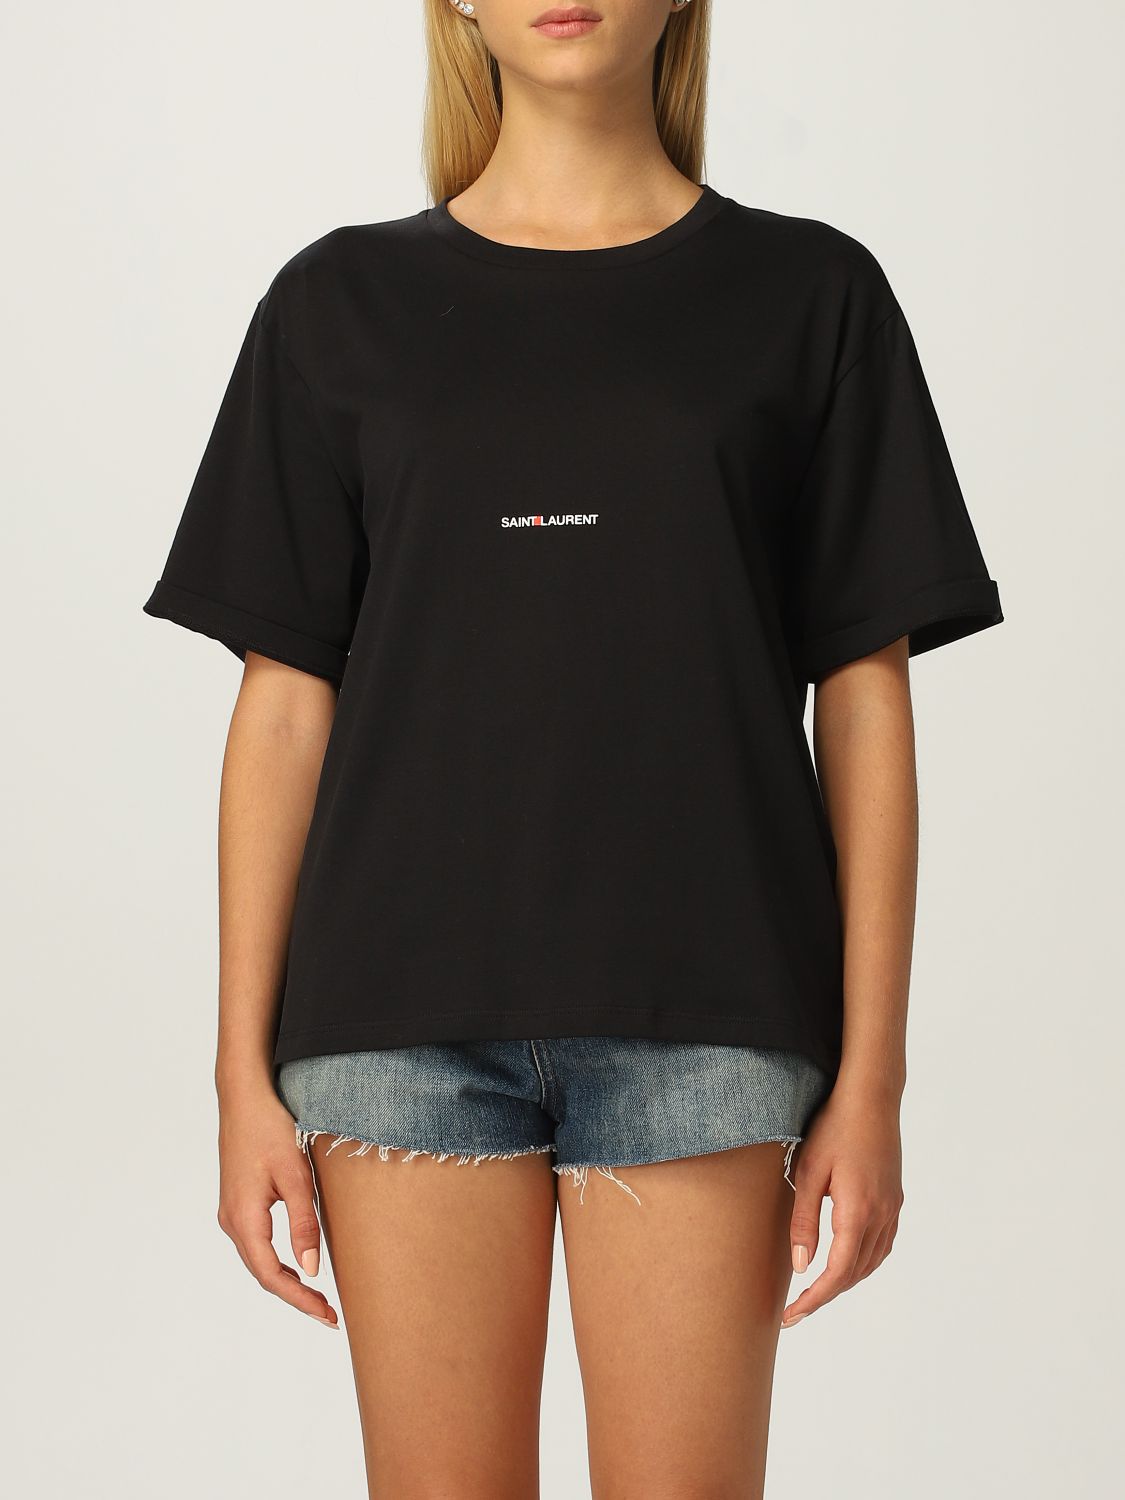 Camiseta Saint Laurent: Camiseta mujer Saint Laurent negro 1